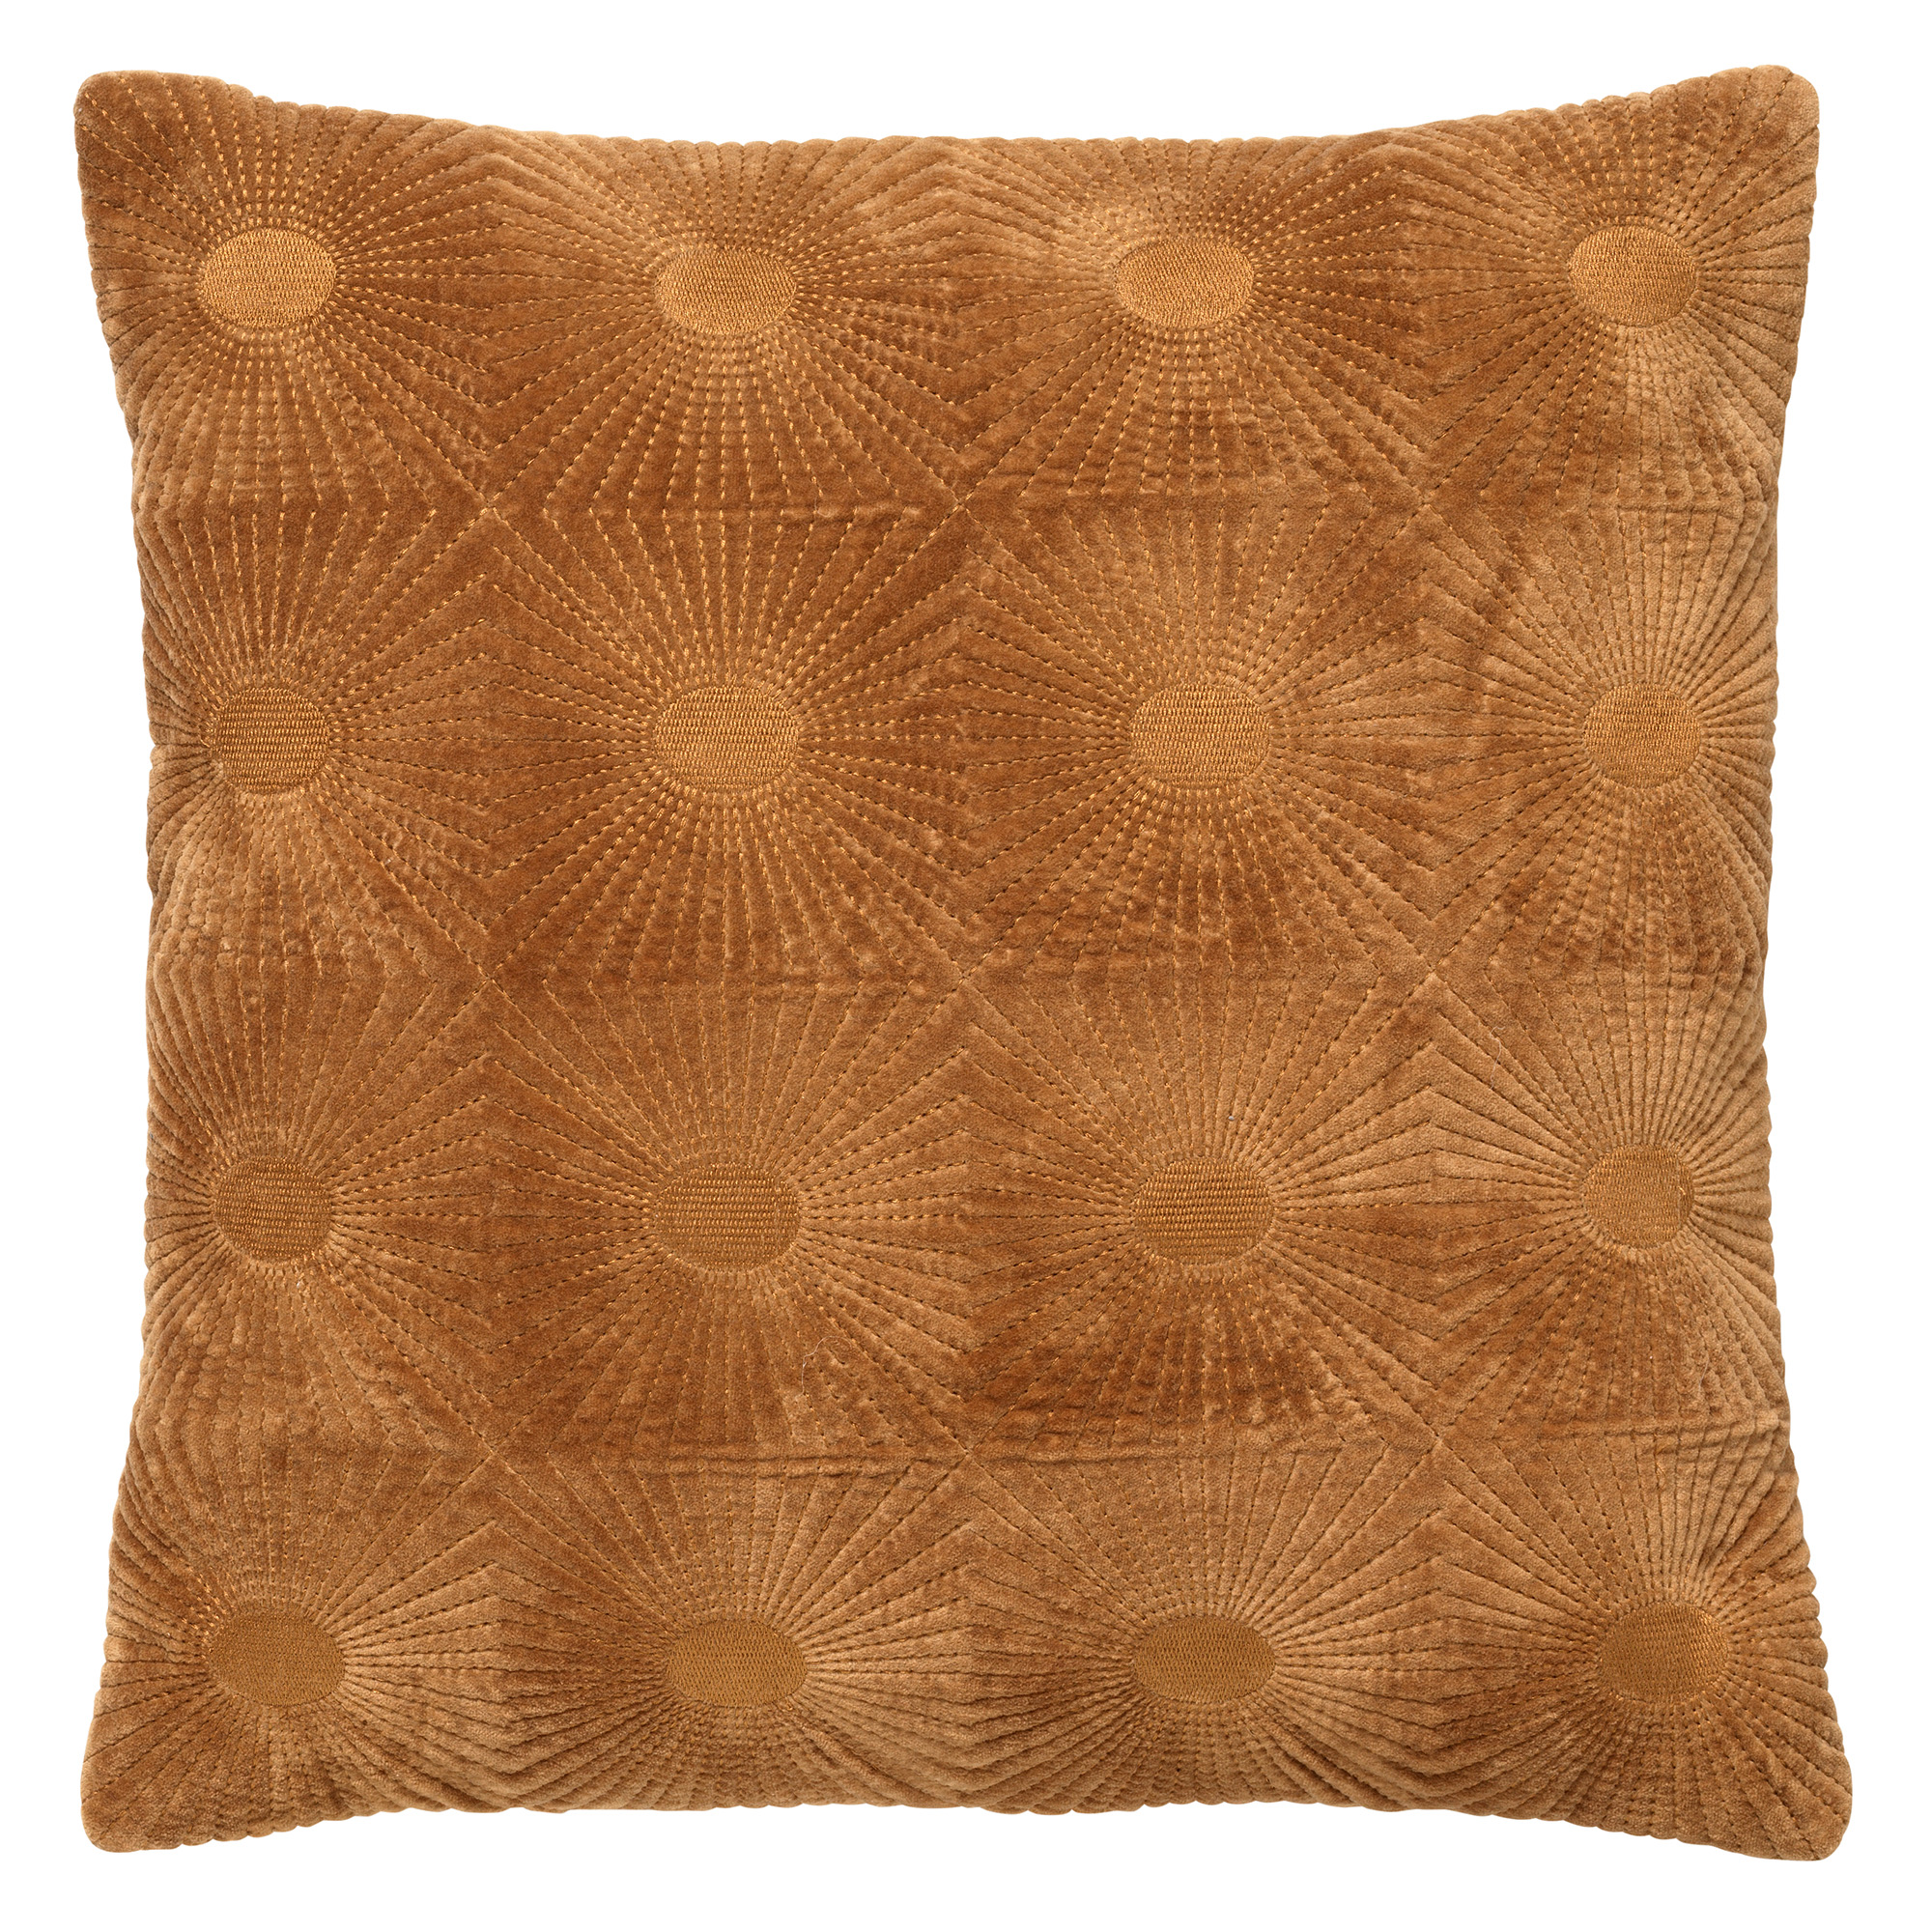 SUN - Cushion cotton 45x45 cm Tobacco Brown